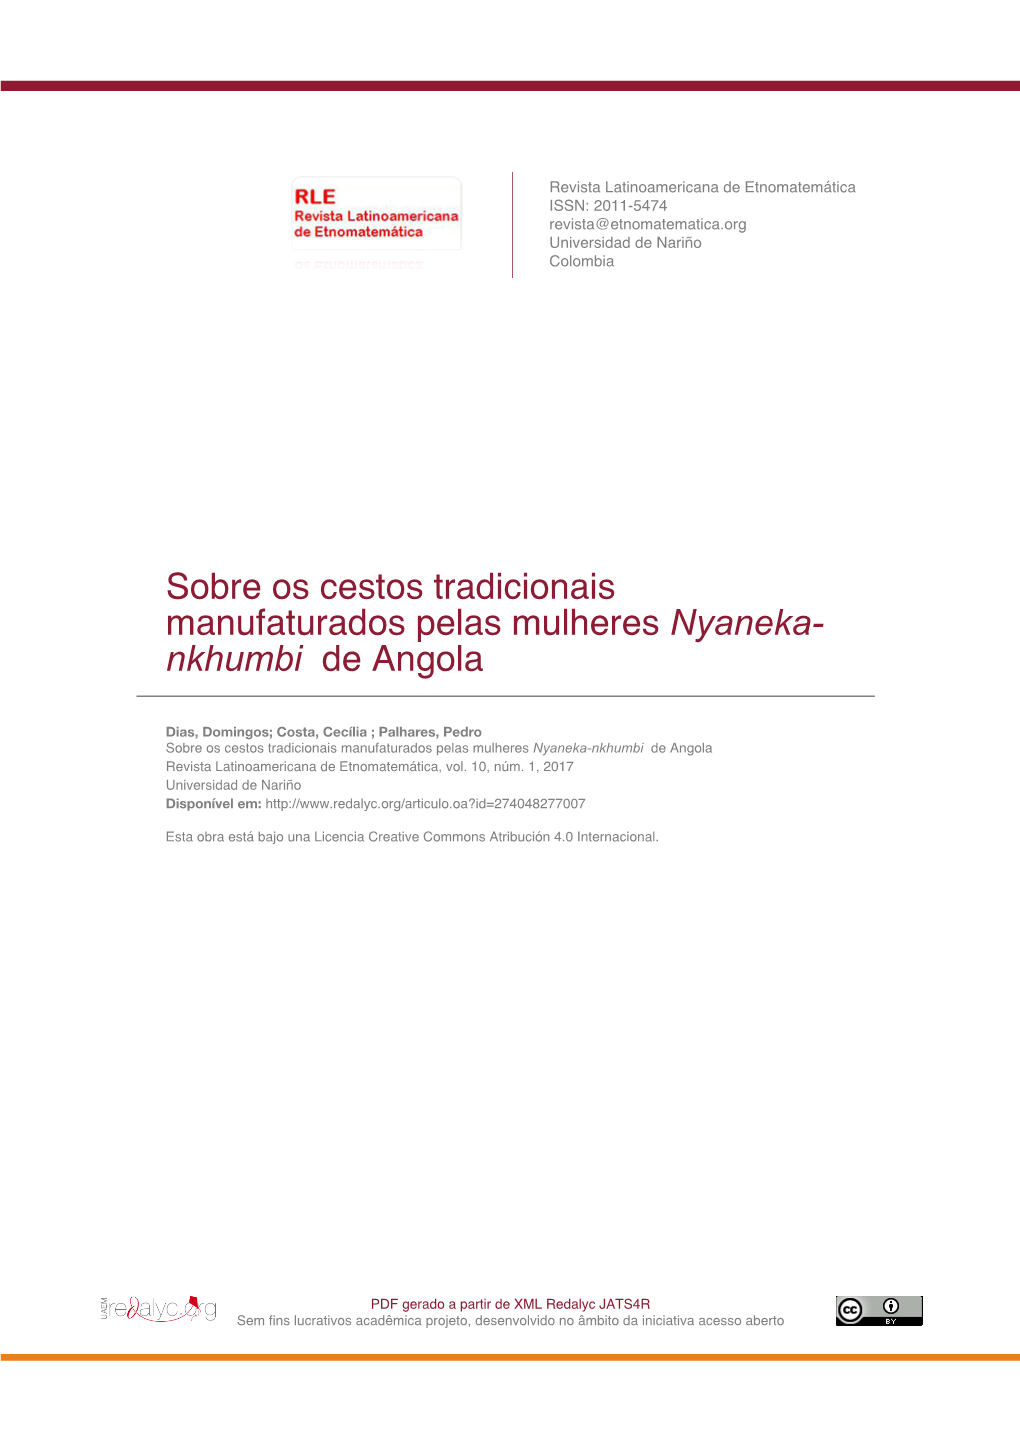 Sobre Os Cestos Tradicionais Manufaturados Pelas Mulheres Nyaneka- Nkhumbi De Angola